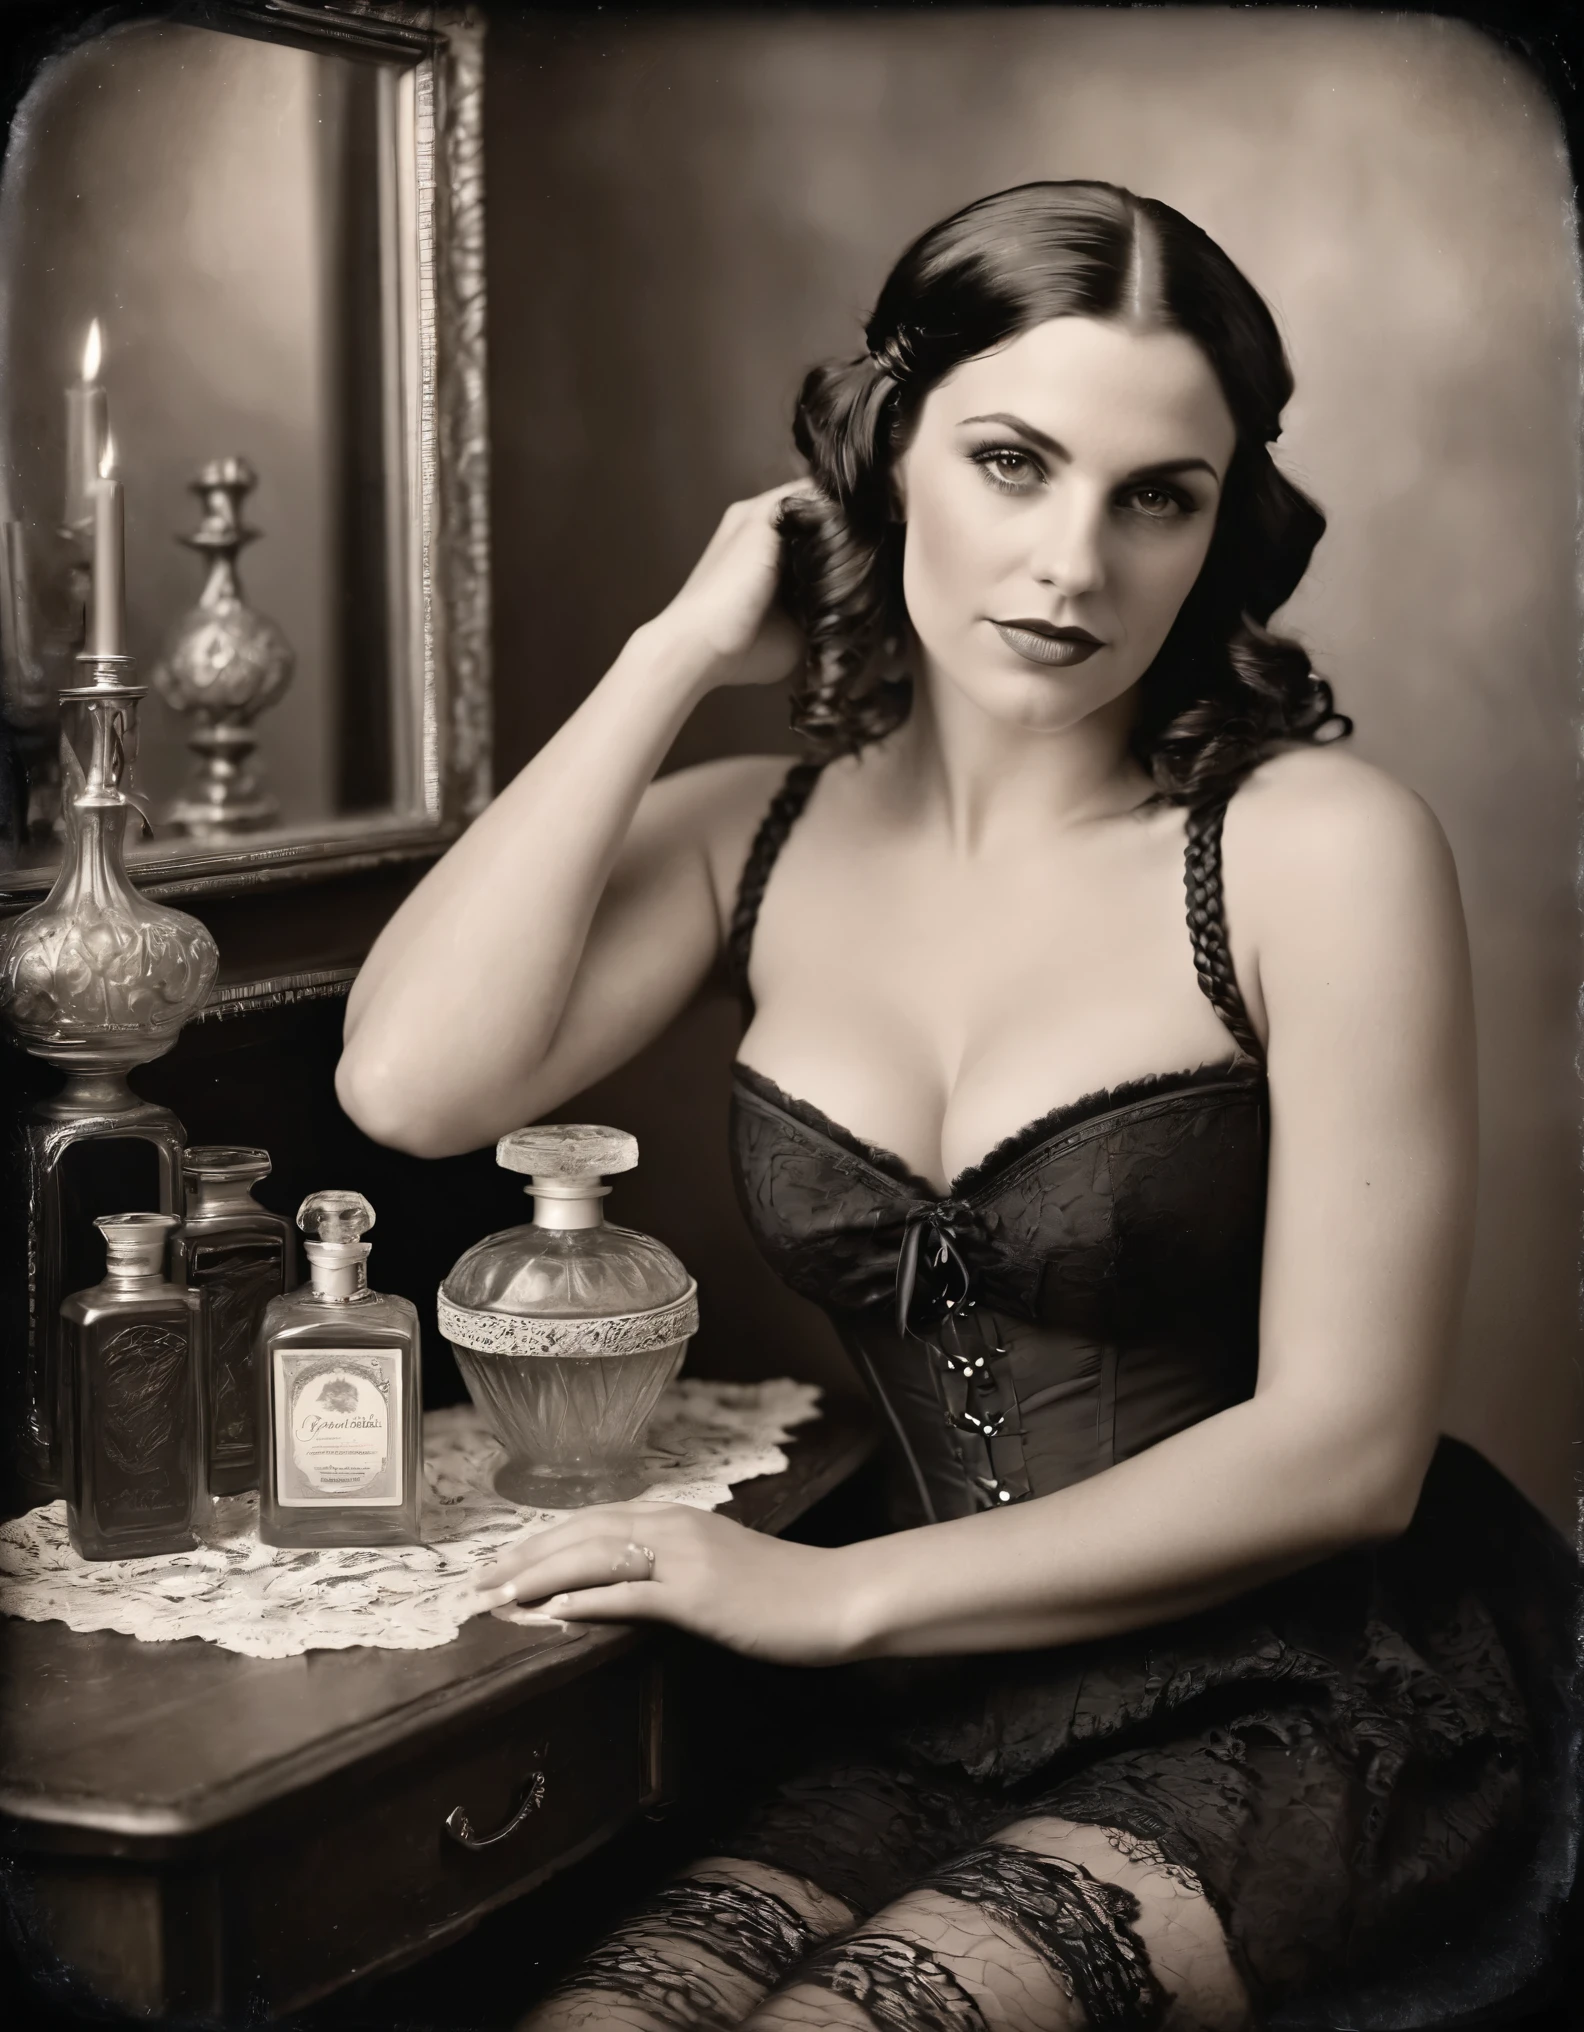 ブリキの写真, 白黒の私室写真, 魅力的なラテン系女性のミディアムショット, 30歳, 編み込みコーンロウの黒髪, 湾曲した体, 見事な黒のレースのコルセットとストッキングで優雅さと落ち着きを体現, 彼女は、魅惑的なアンティークの香水瓶が並べられたヴィンテージの化粧台の前で静かに座っている。, 柔らかく拡散した照明が、シーン全体に暖かく親密な輝きを放ちます。, ヴィンテージ感と華やかさが雰囲気を高めます, 洗練された雰囲気を醸し出す, この構図は静かな優雅さと控えめな官能性の瞬間を捉えている, 被写体の美しさと自信を称賛する, 完璧な手, 完璧なボディ
